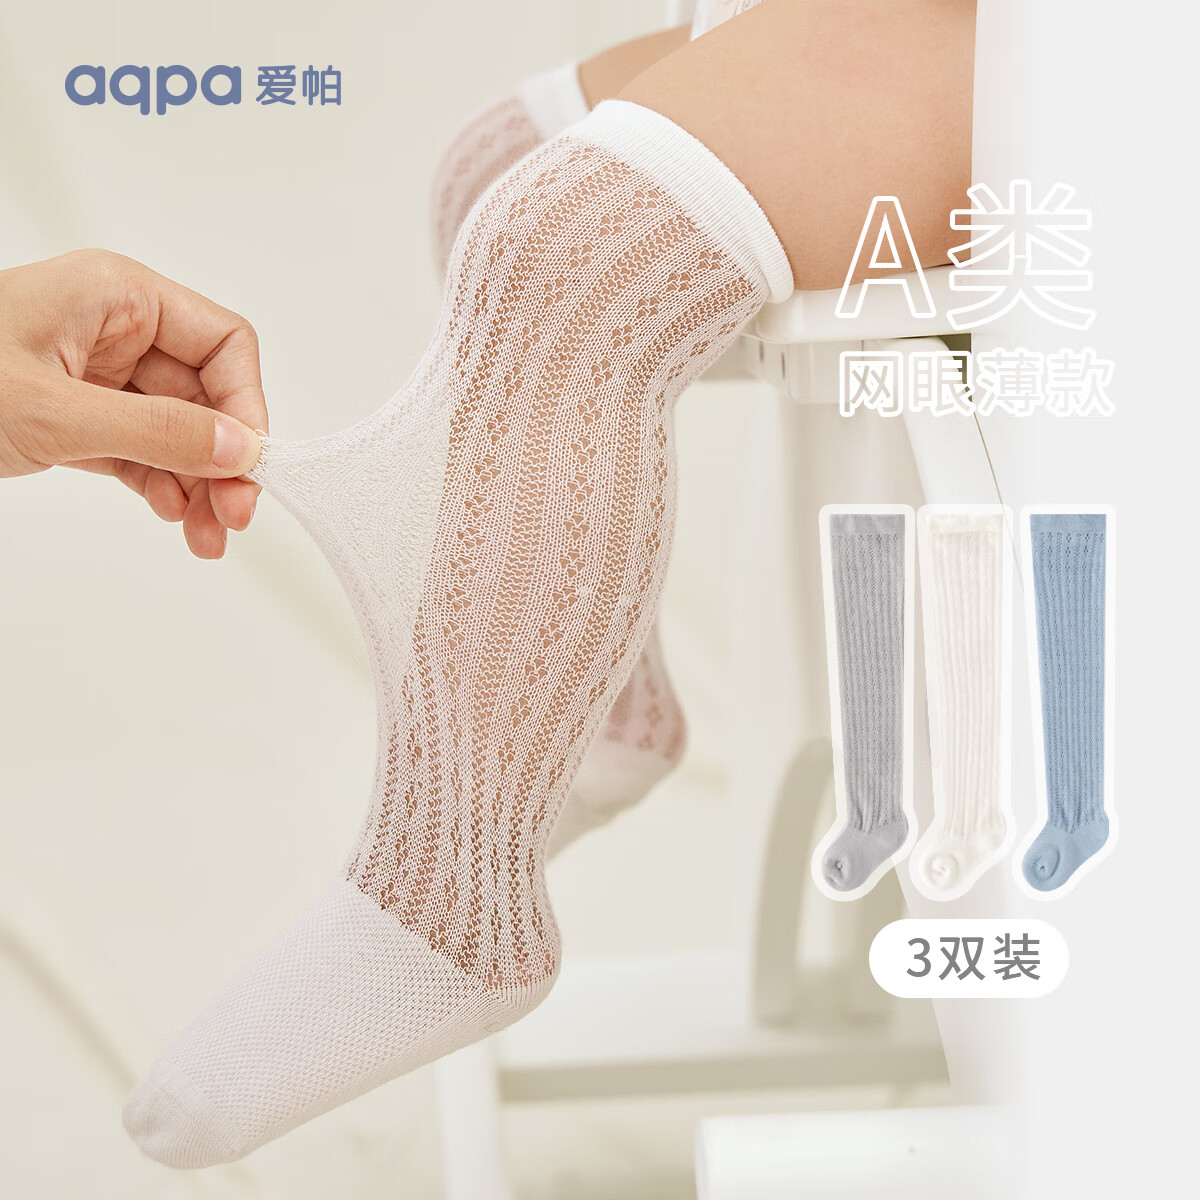 aqpa 婴儿长筒袜儿童袜子夏季薄款透气网眼棉袜过膝袜新生儿宝宝防蚊袜 淡